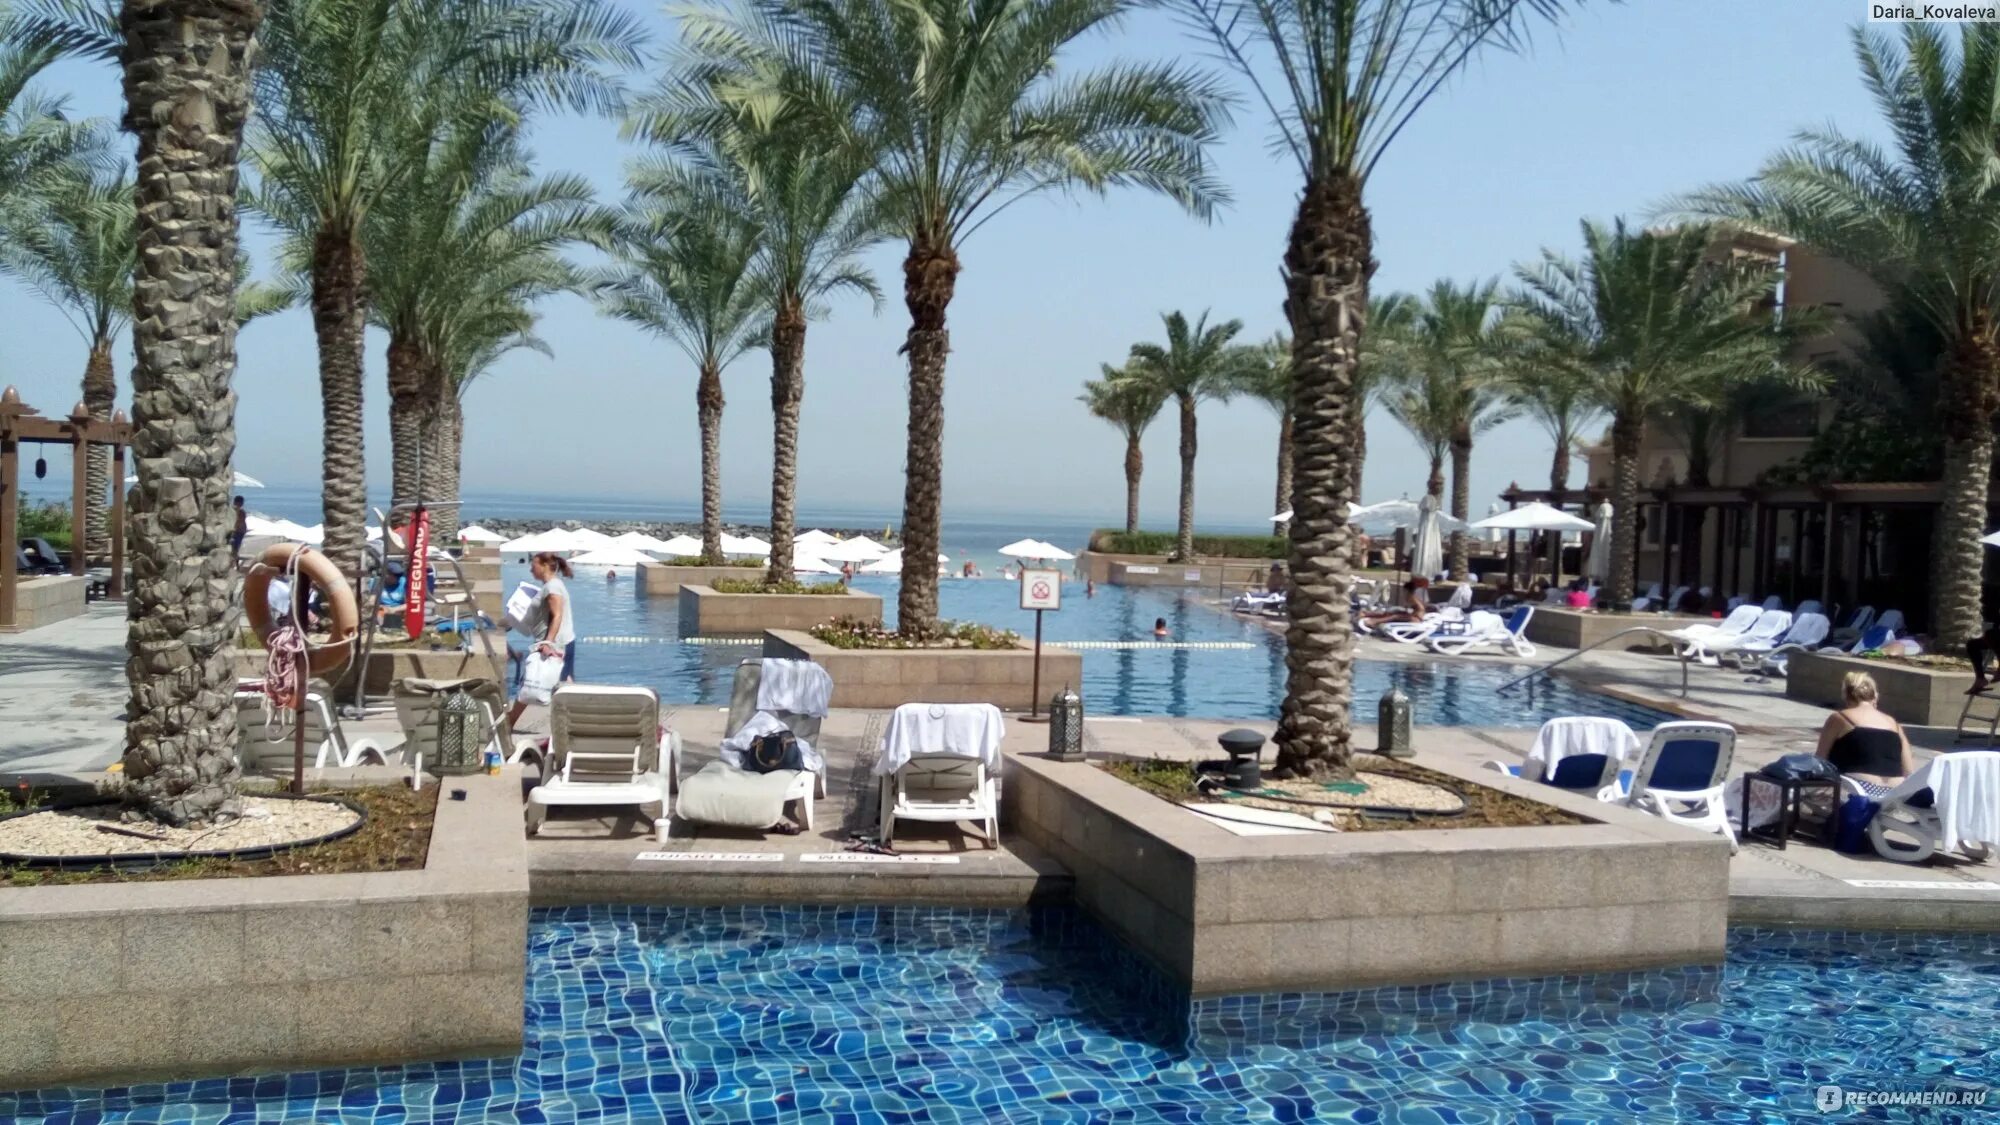 Шератон спа шарджа. Отель Sheraton Sharjah Beach Resort Spa 5. ОАЭ отель Sheraton Sharjah Beach 5. Sheraton Sharjah Beach Resort Spa 5 пляж. Шарджа отель Шератон 5 звезд.